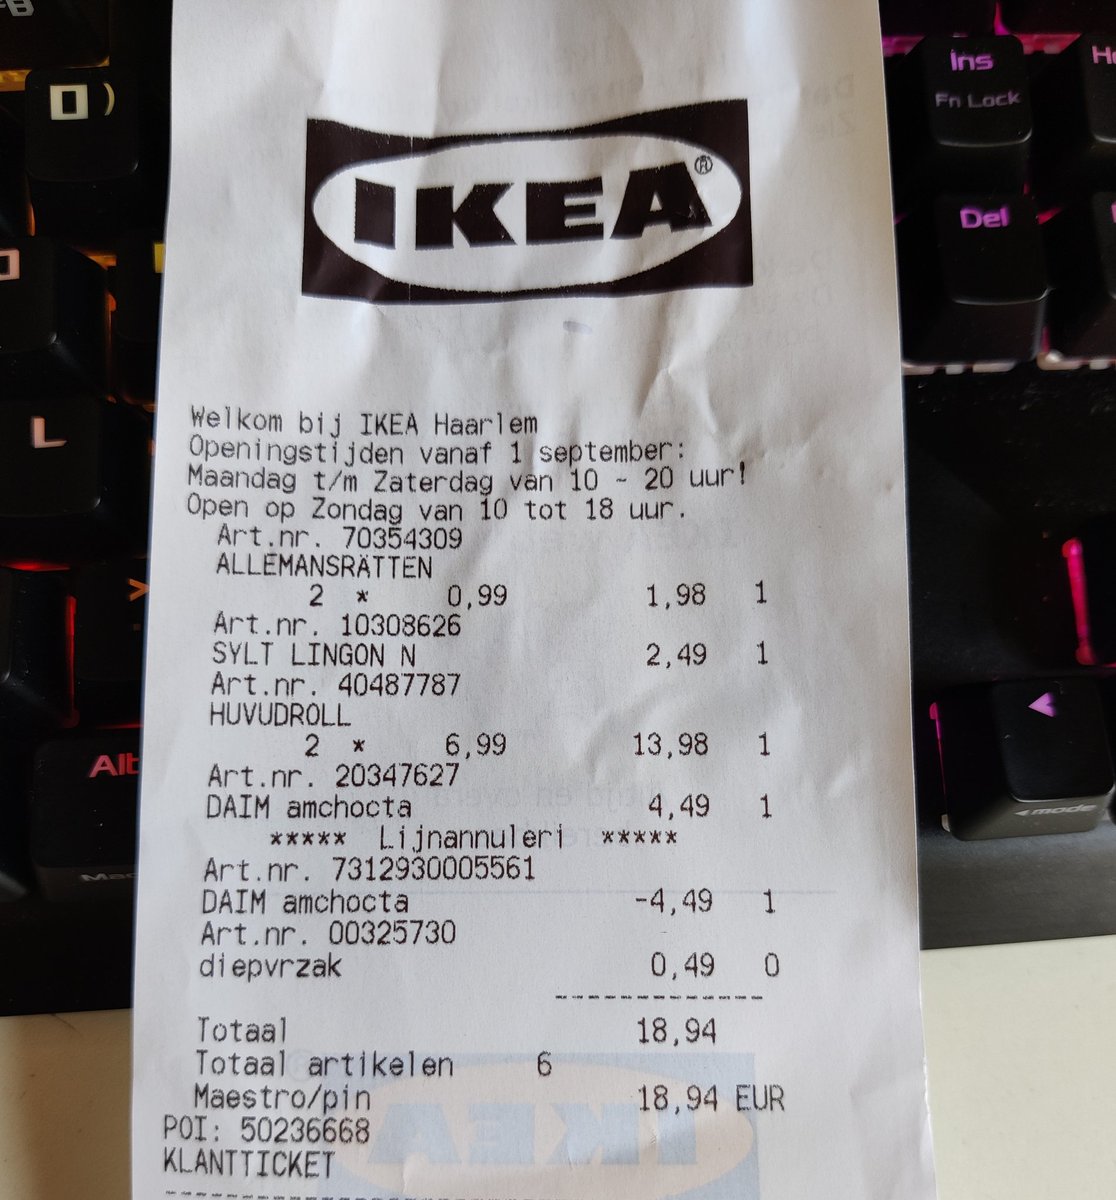 IKEA Nederland on Twitter: "@kesje Hej Kelly, bedankt voor bericht. Vervelend dat de lekkere balletjes twee keer zijn aangeslagen! Ik raad je aan om met de bon naar de klantenservice te